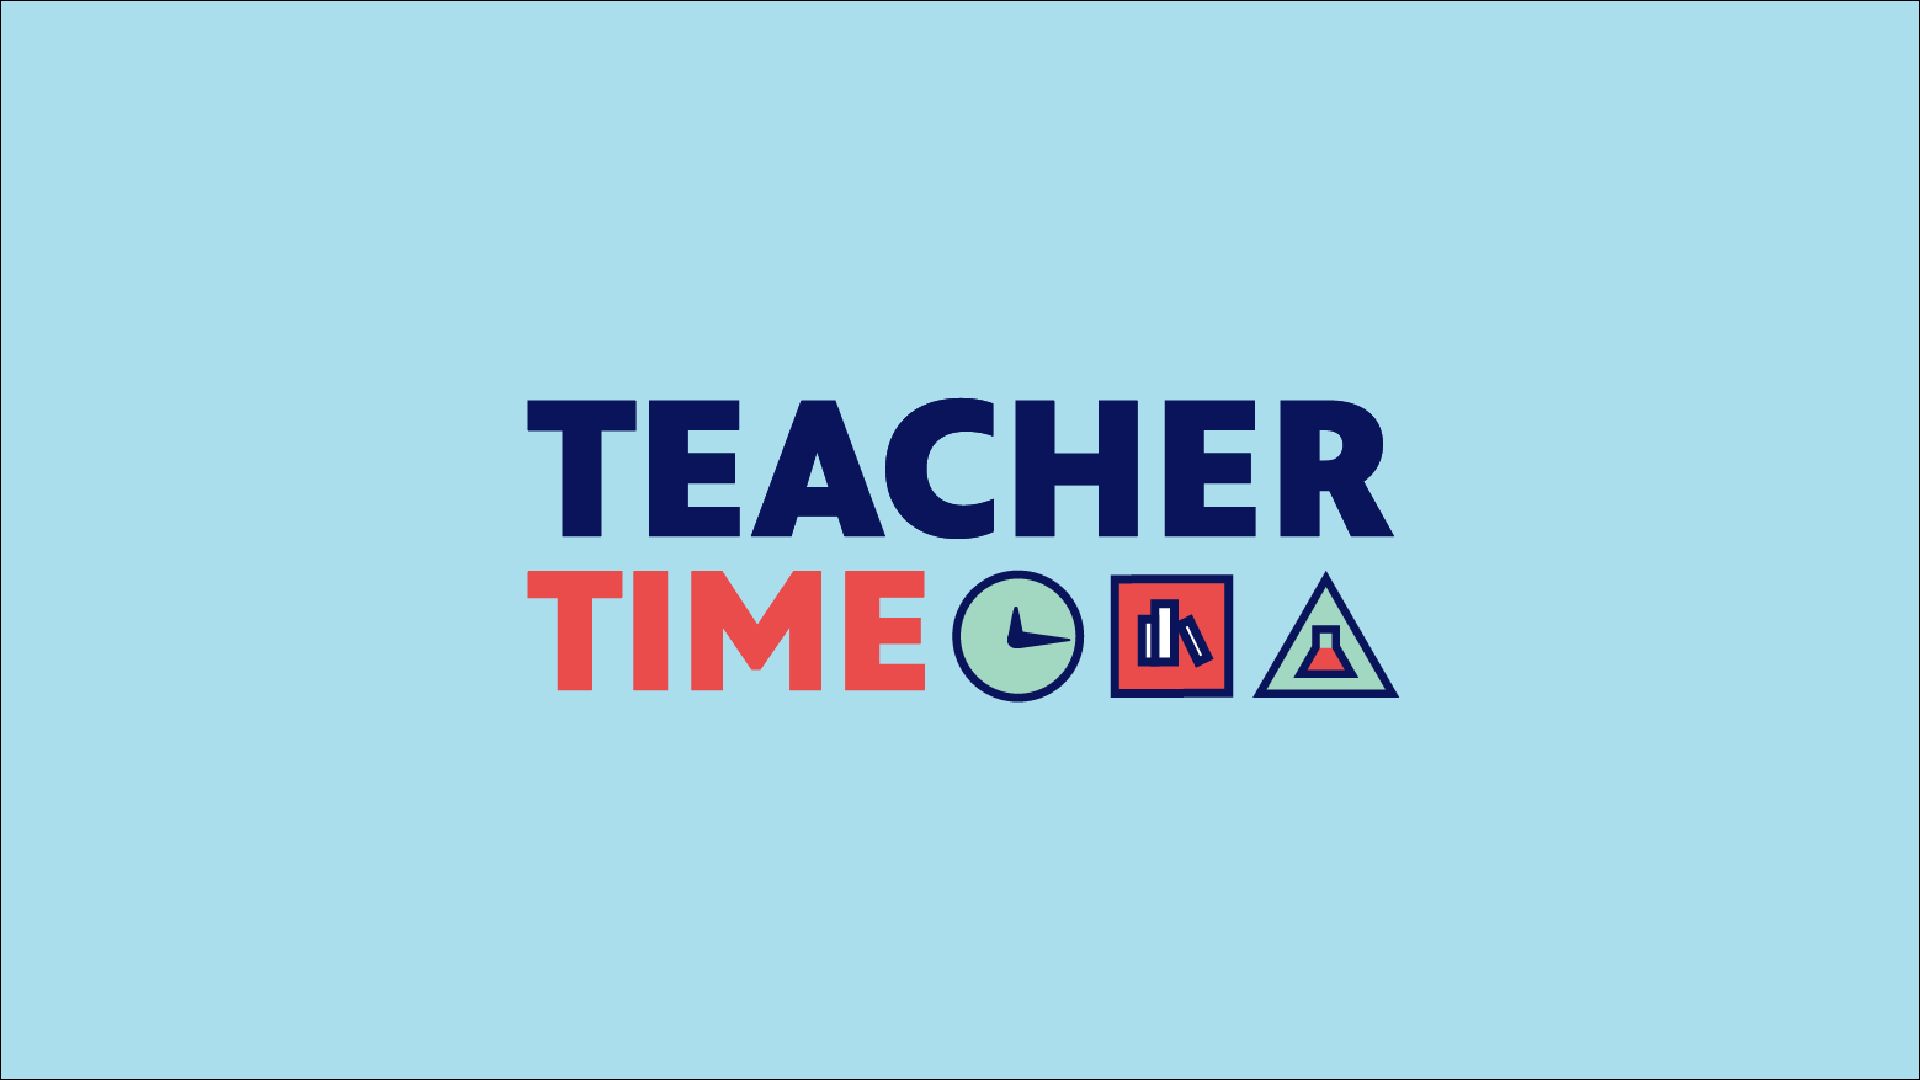 Teacher Time logo on light blue background